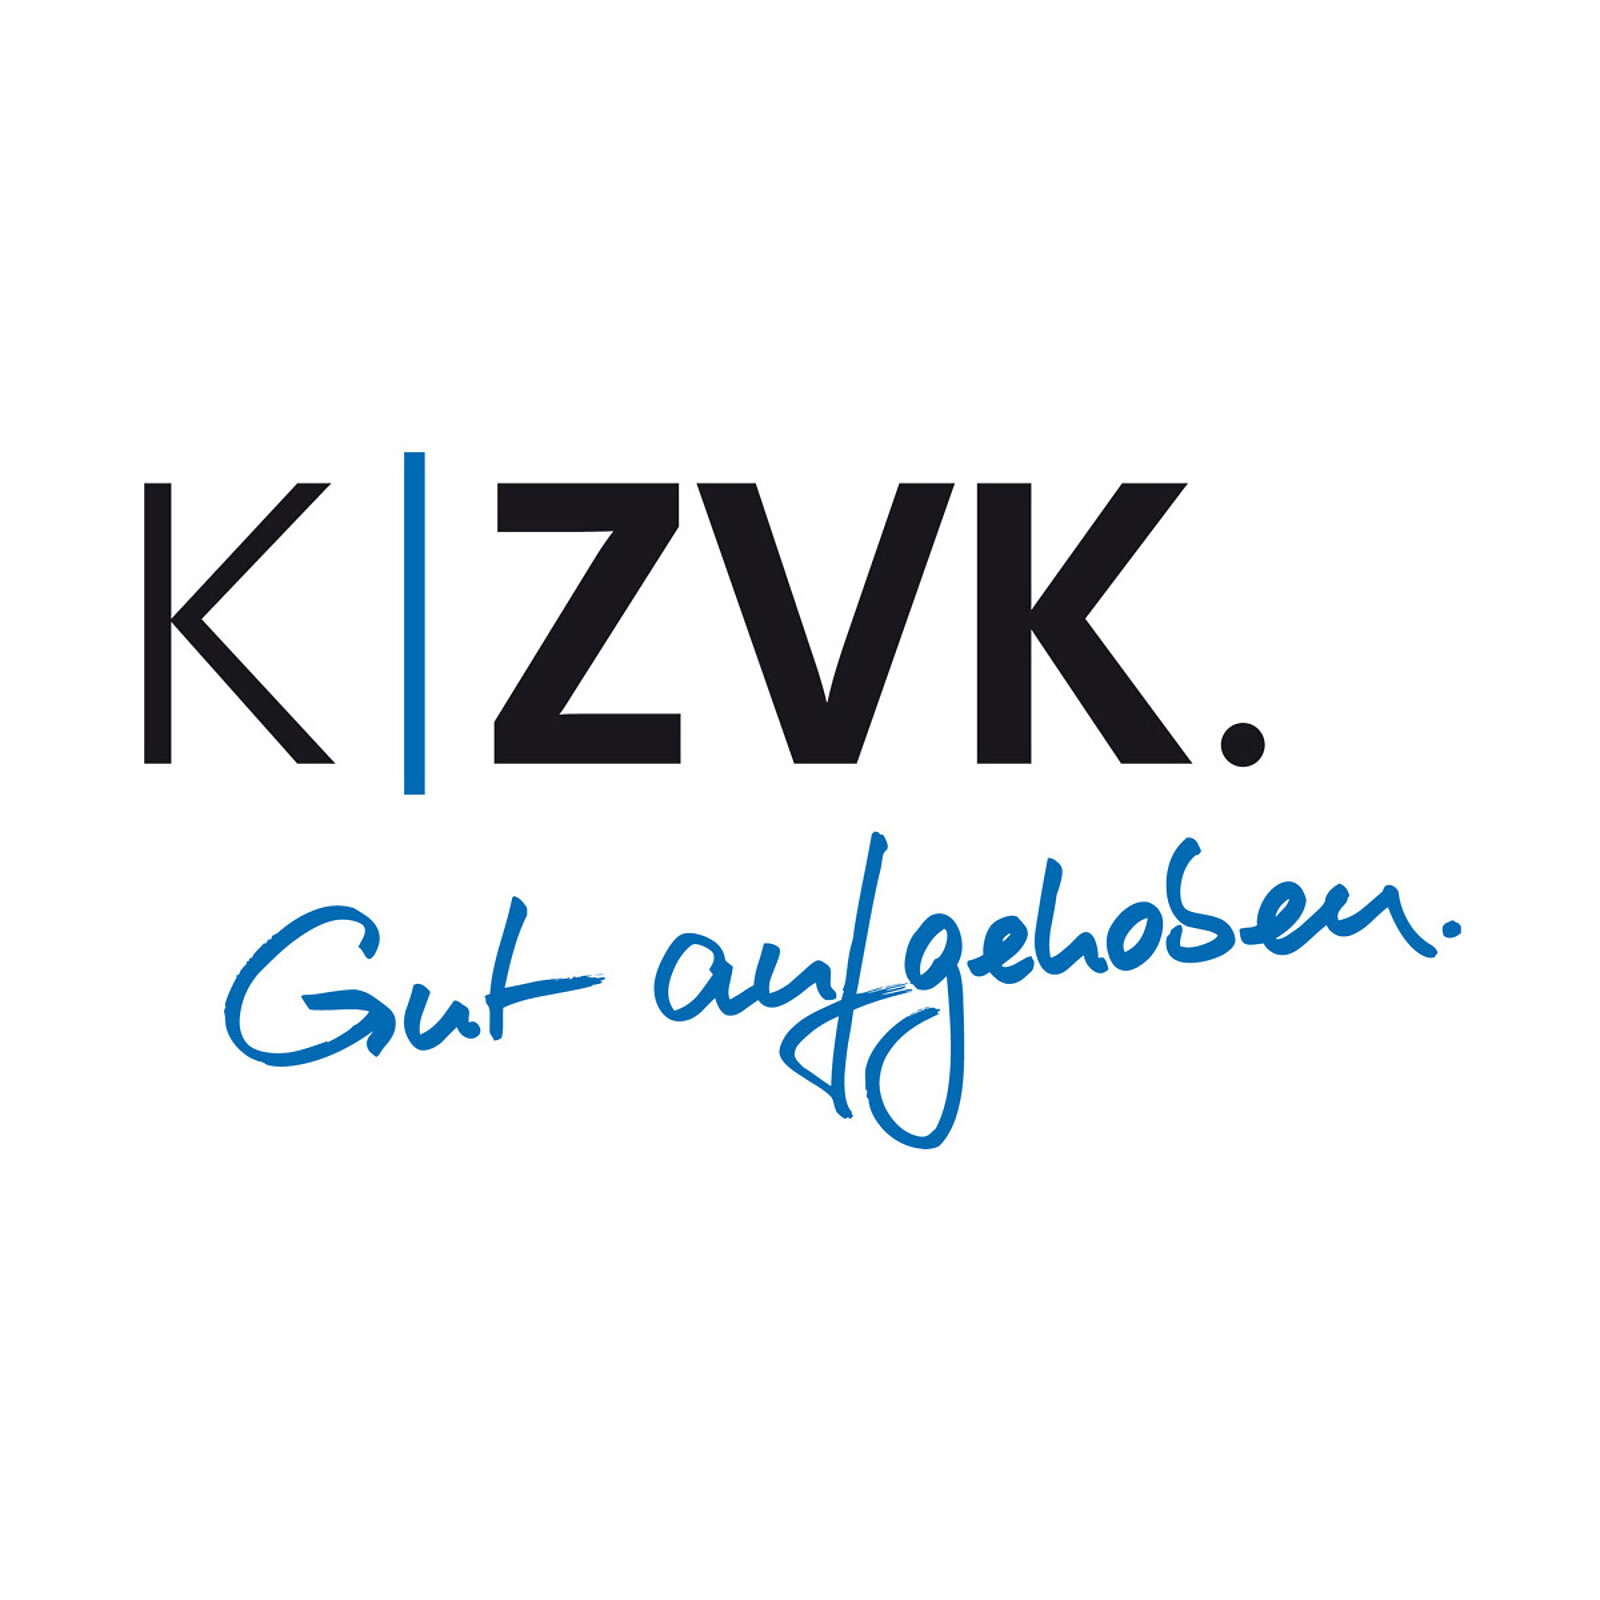 Logo der KZVK mit dem Slogan "Gut aufgehoben"